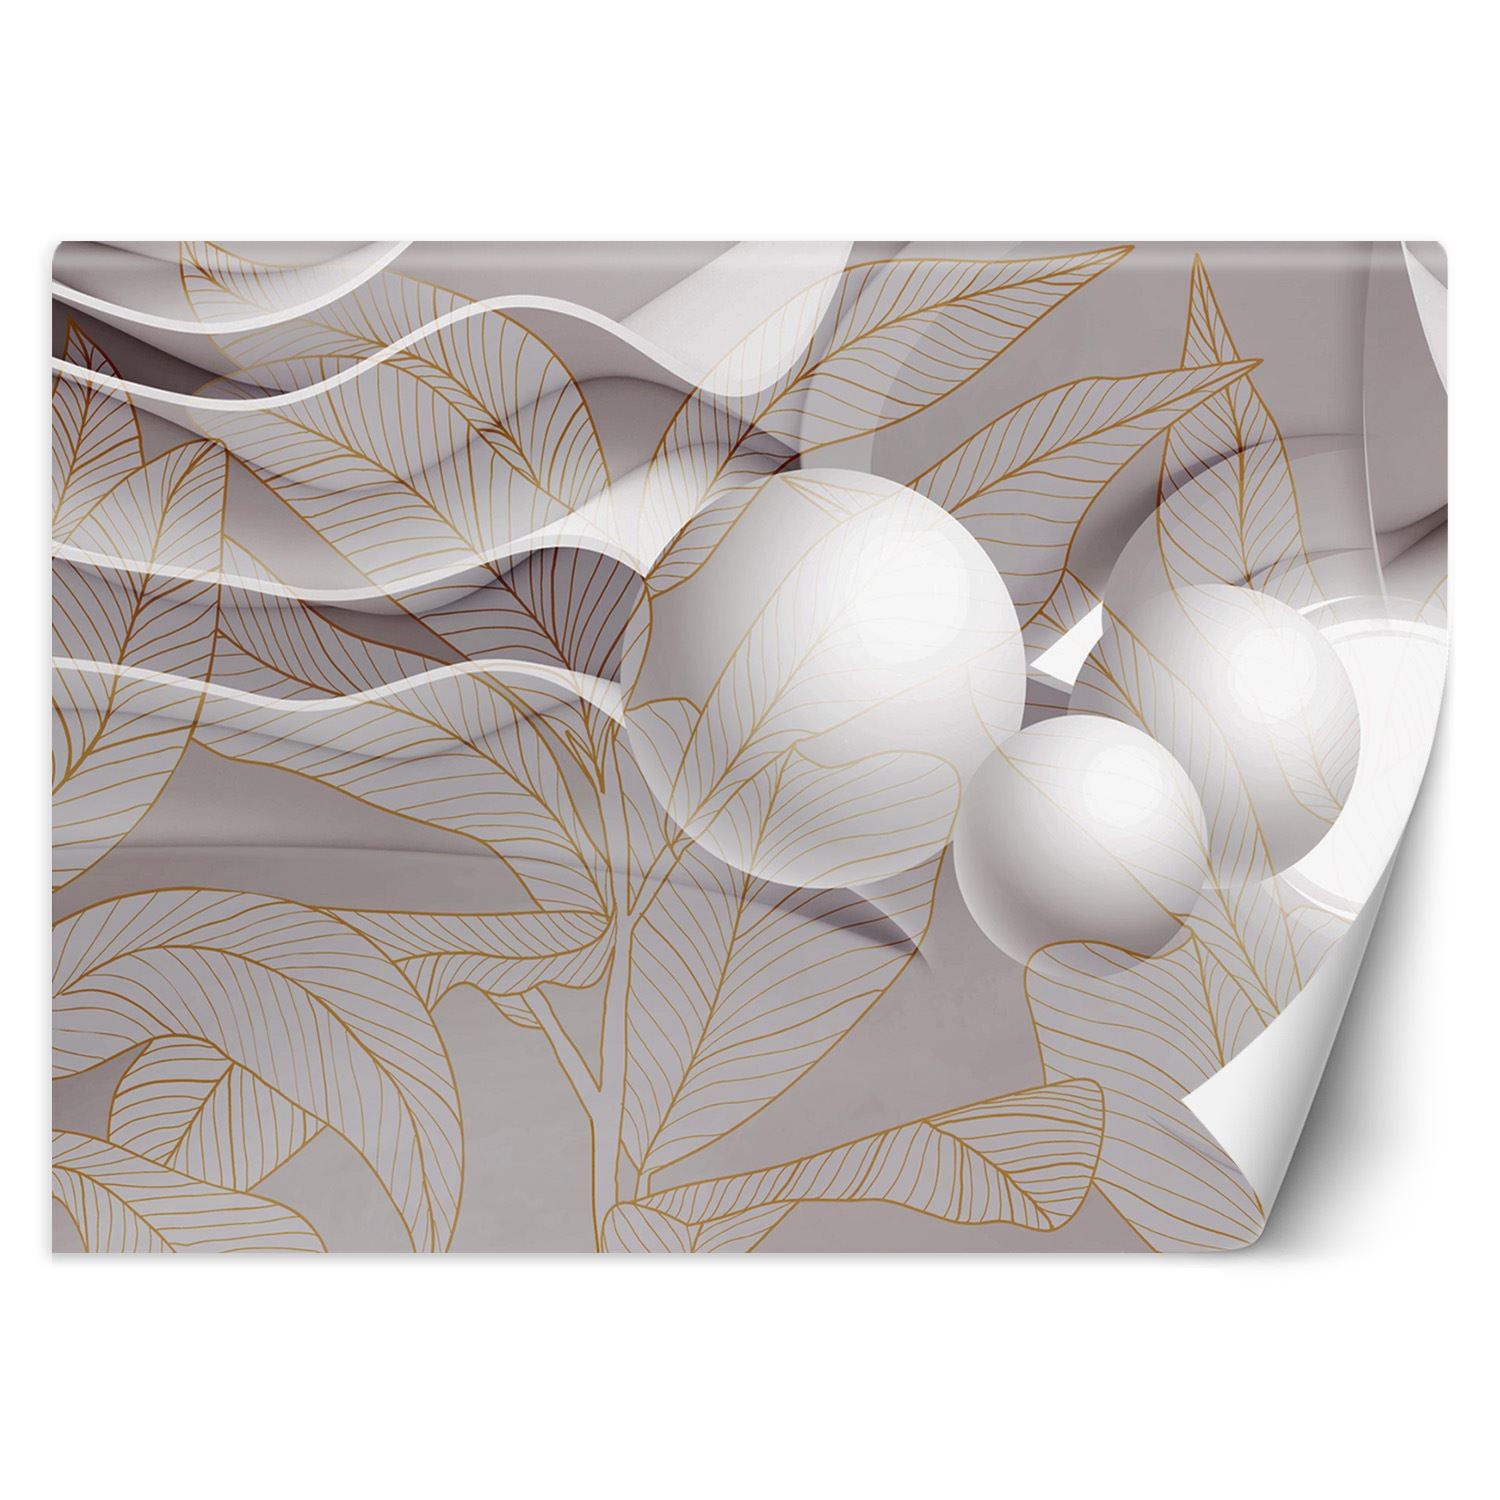 Trend24 – Behang – Goudbladeren En Bollen 3D – Behangpapier – Fotobehang 3D – Behang Woonkamer – 450×315 cm – Incl. behanglijm